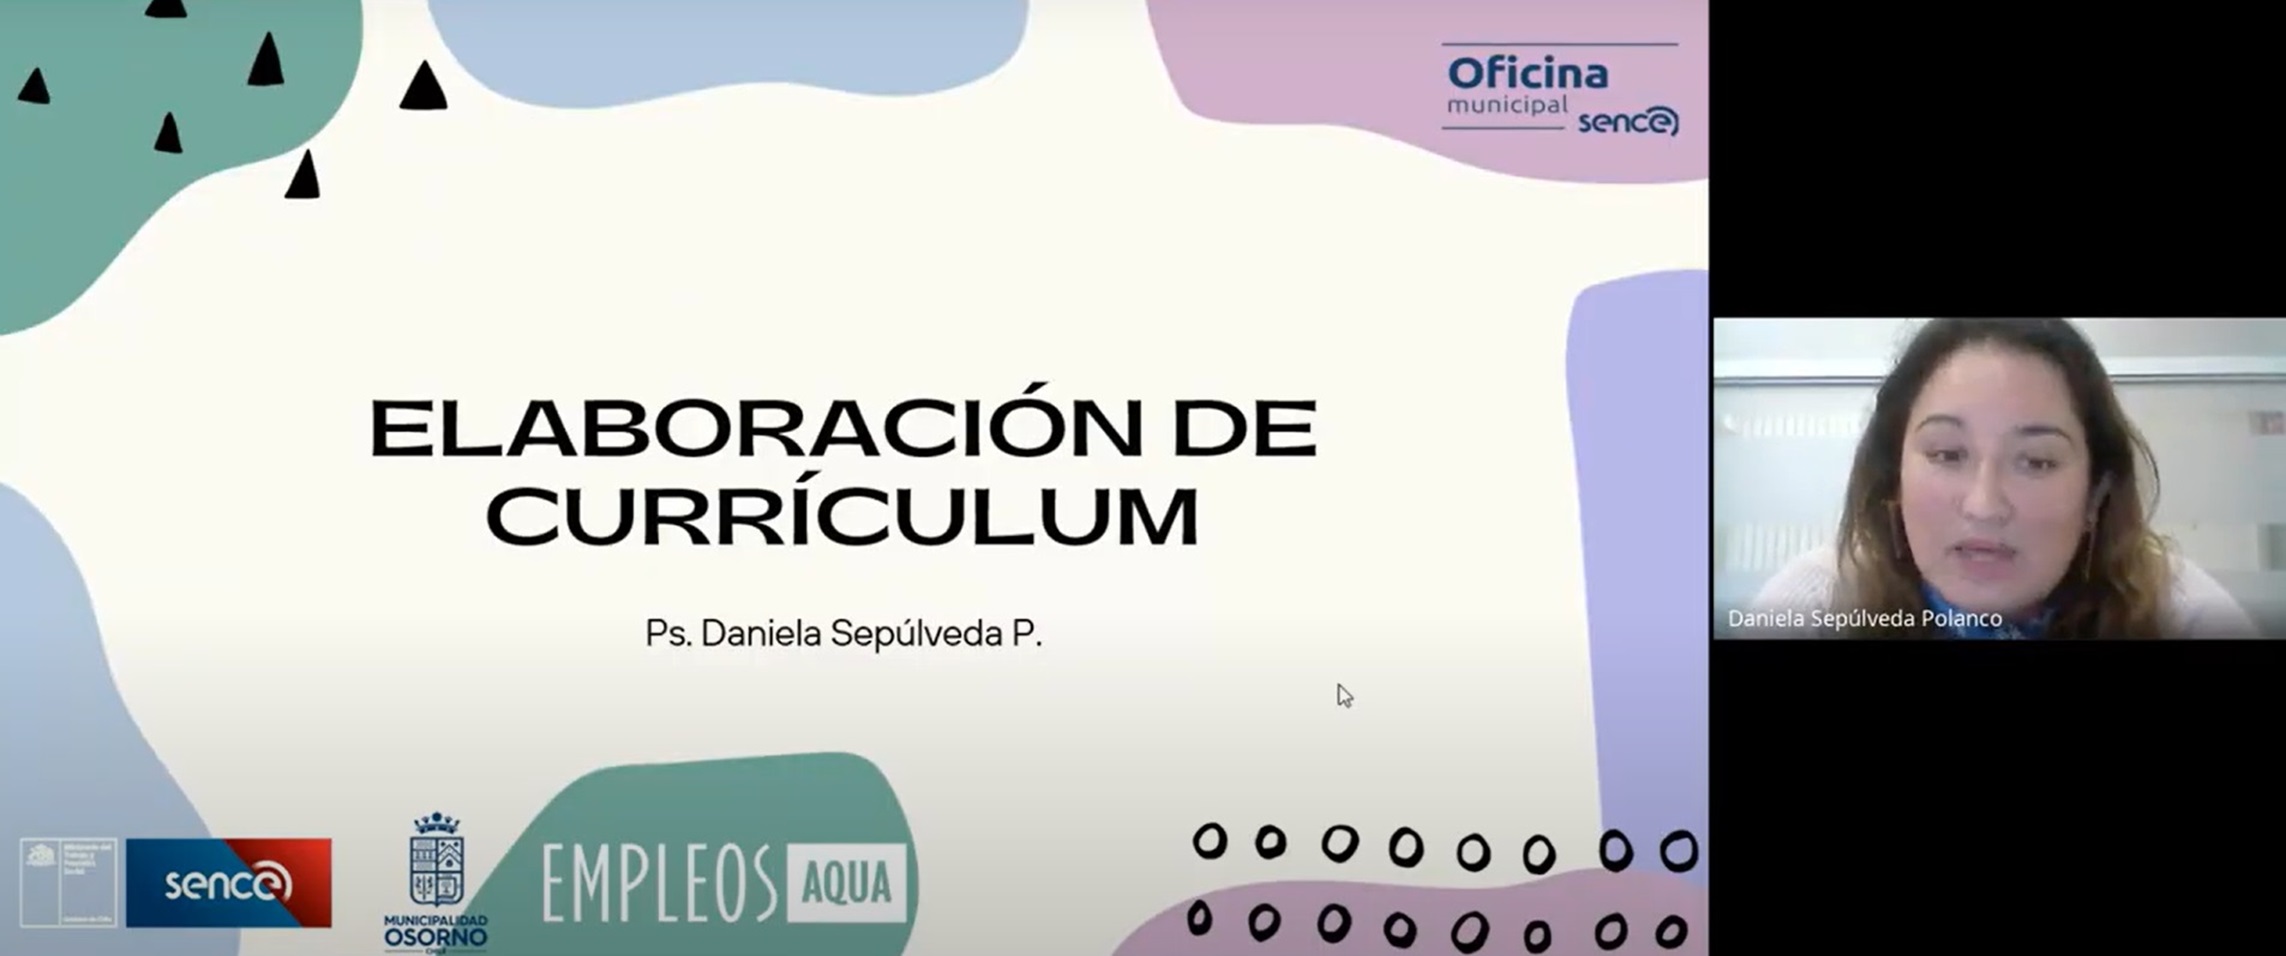 EmpleosAqua participa en masivo taller sobre “Elaboración de Currículum”